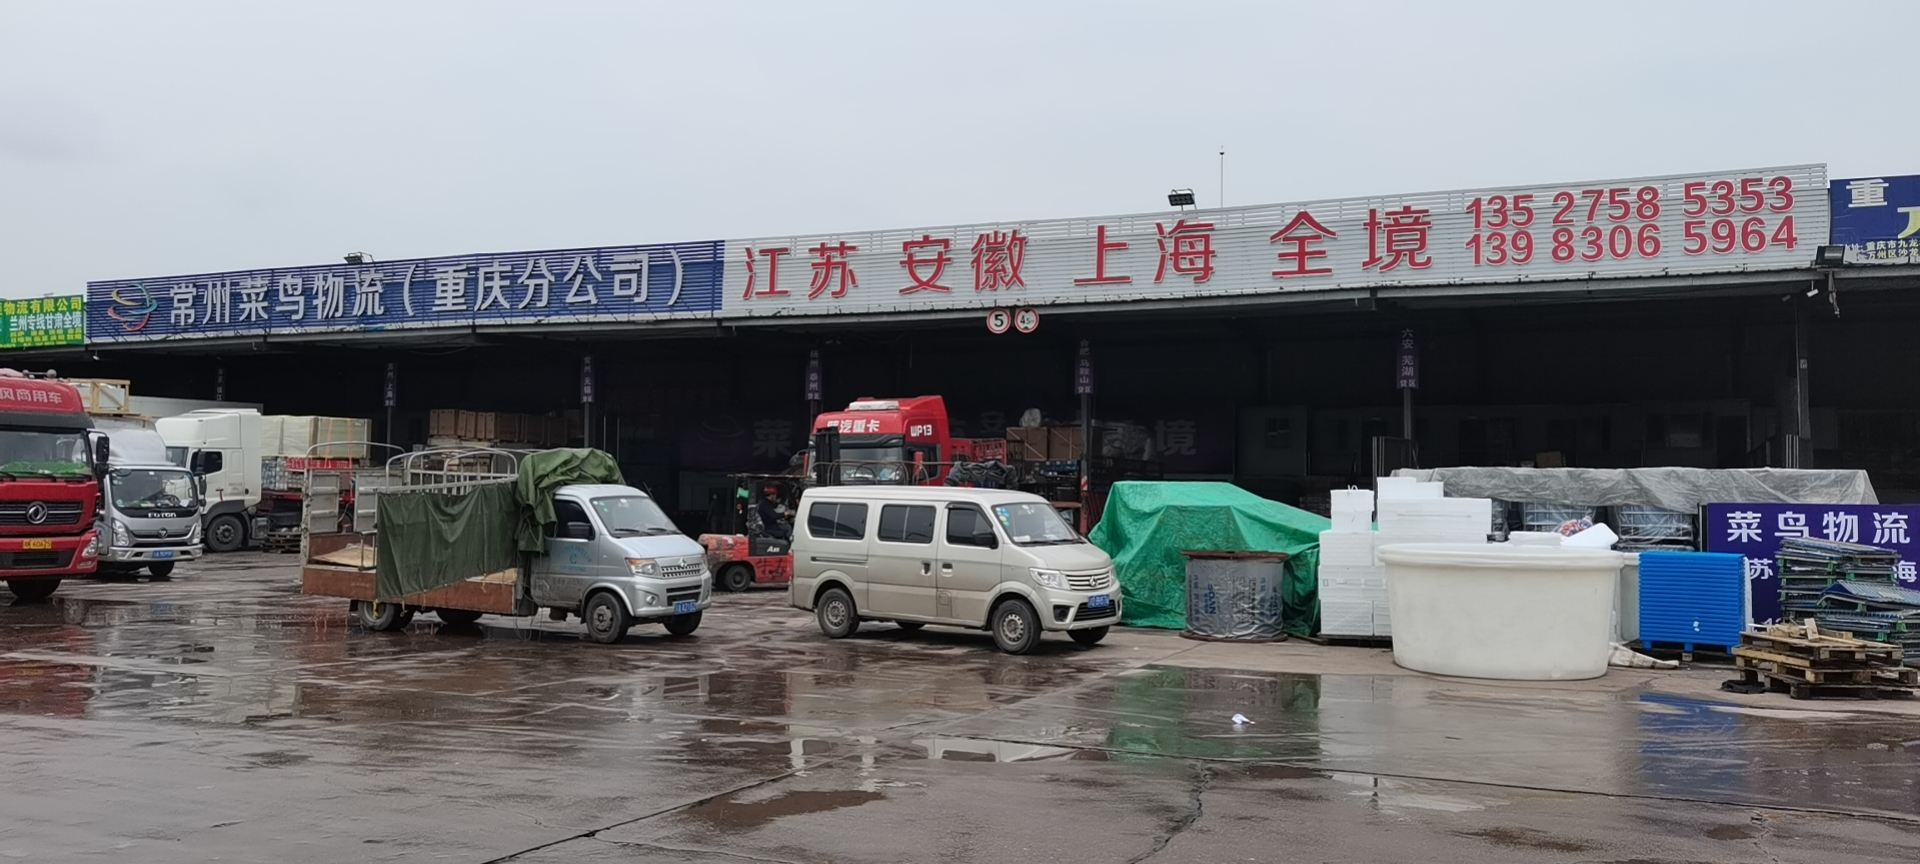 重庆至上海整车运输 零担物流 专业货物运输 重庆到上海直达专线